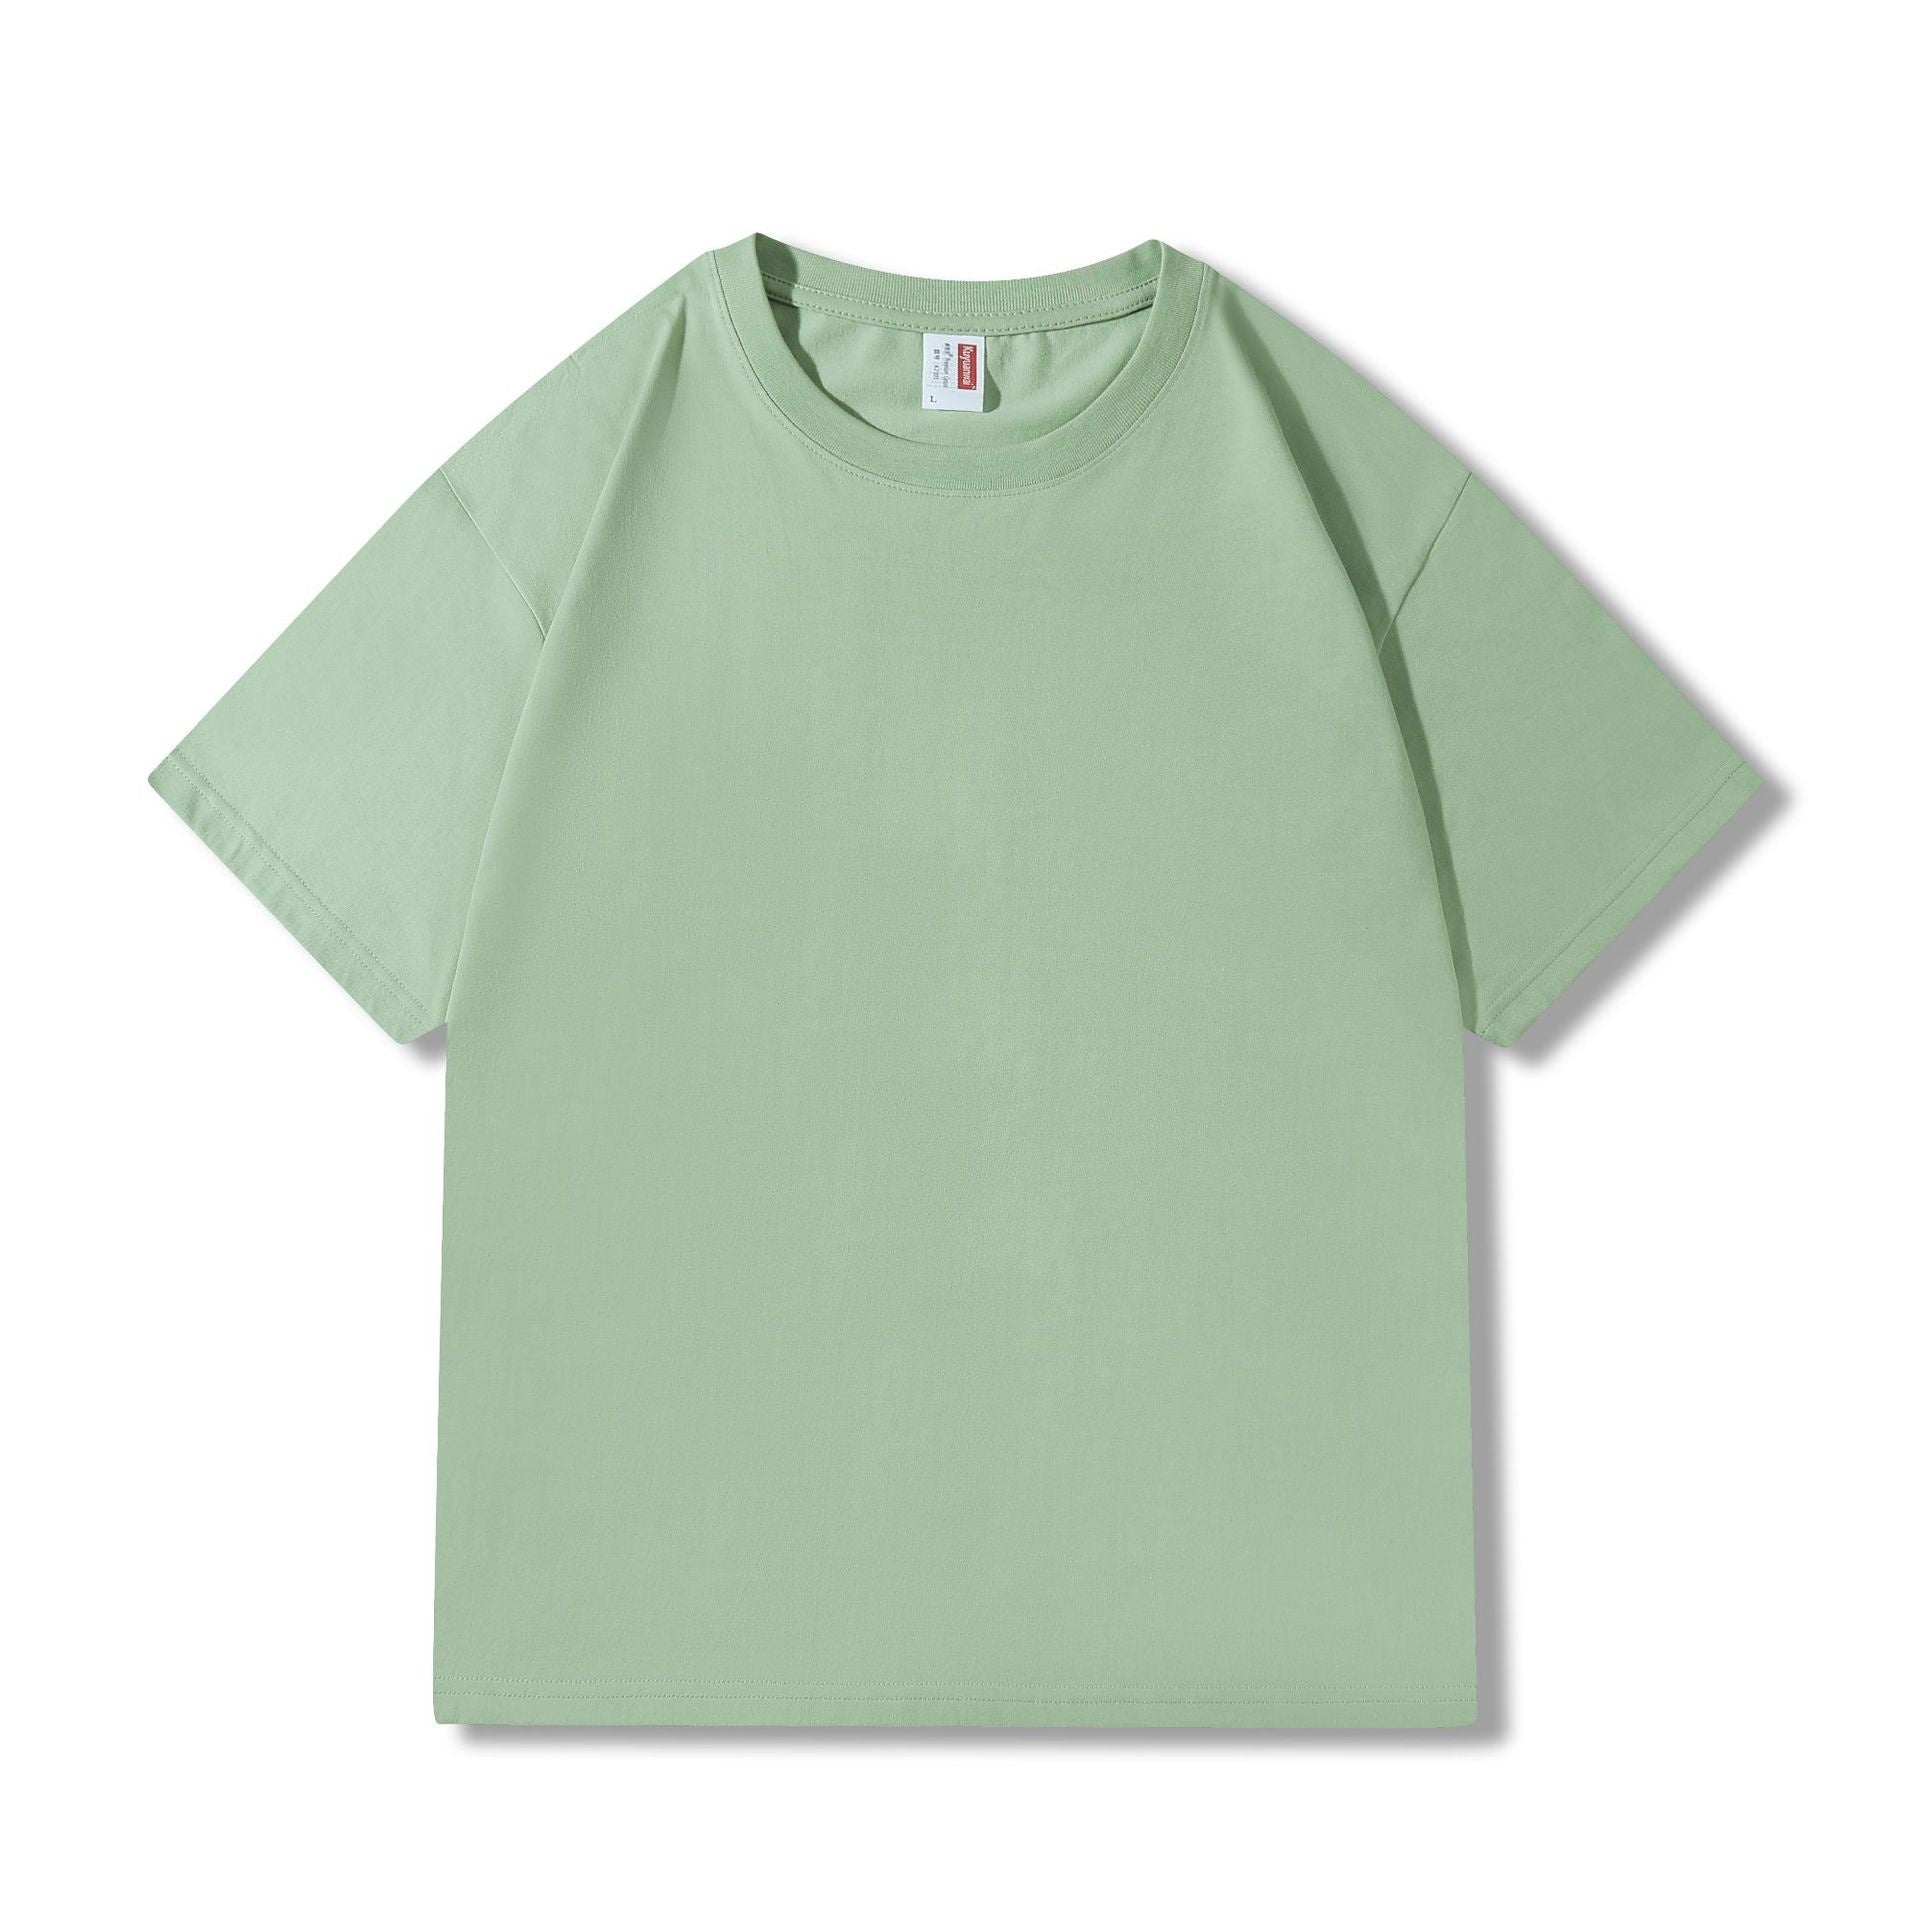 Light bean green - Siro Spinning Cotton Men's T-shirt - mens t-shirt at TFC&H Co.